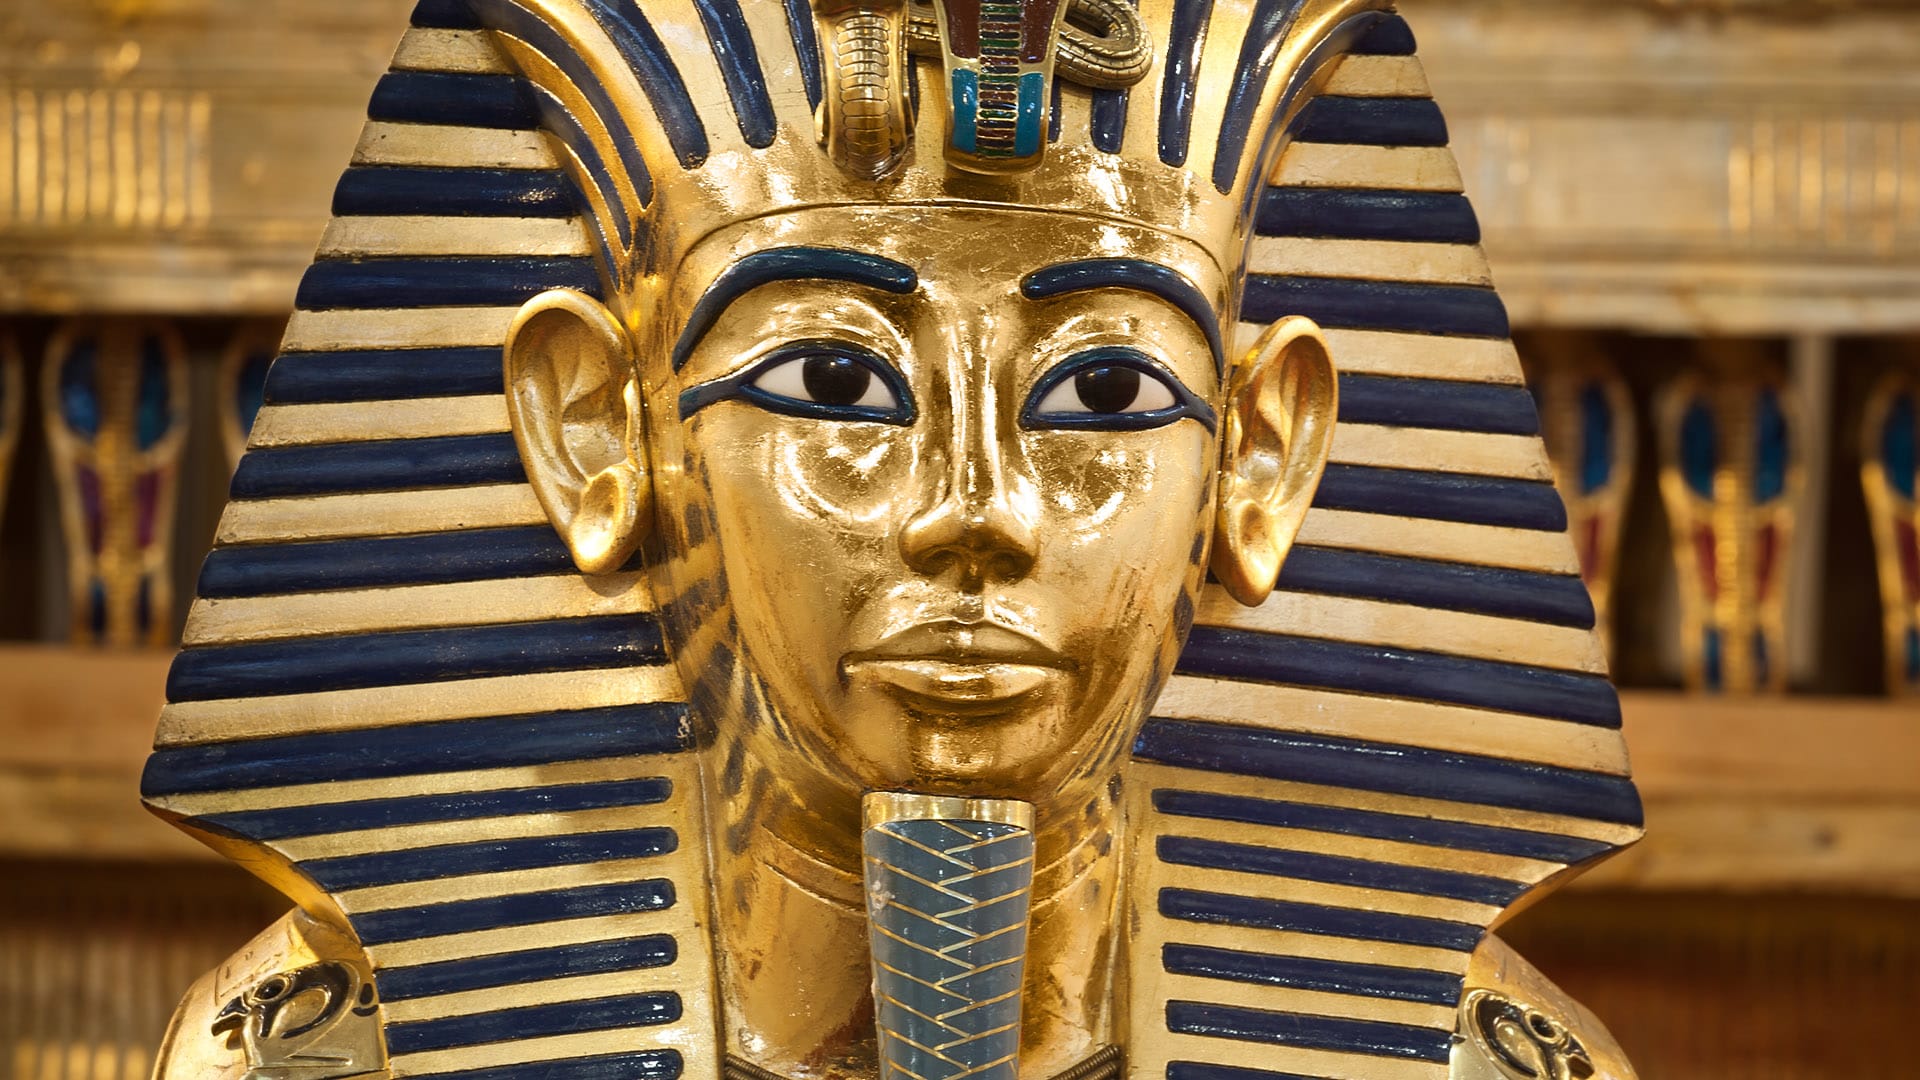 Kopie Tutanchamonovy masky